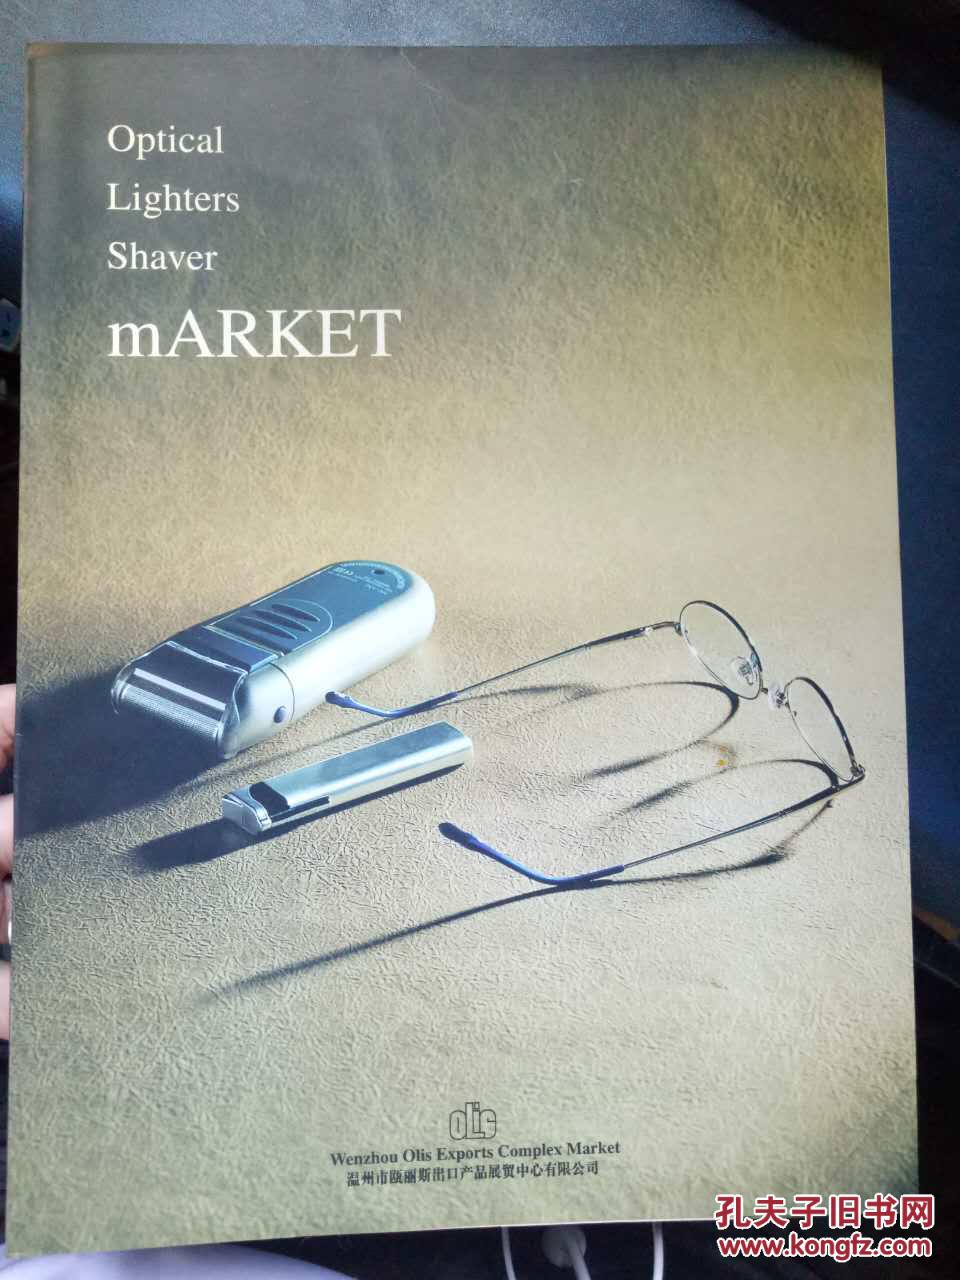 【Optical Lighters Shaver mARKET 温州市欧丽斯出口产品展览中心有限公司】